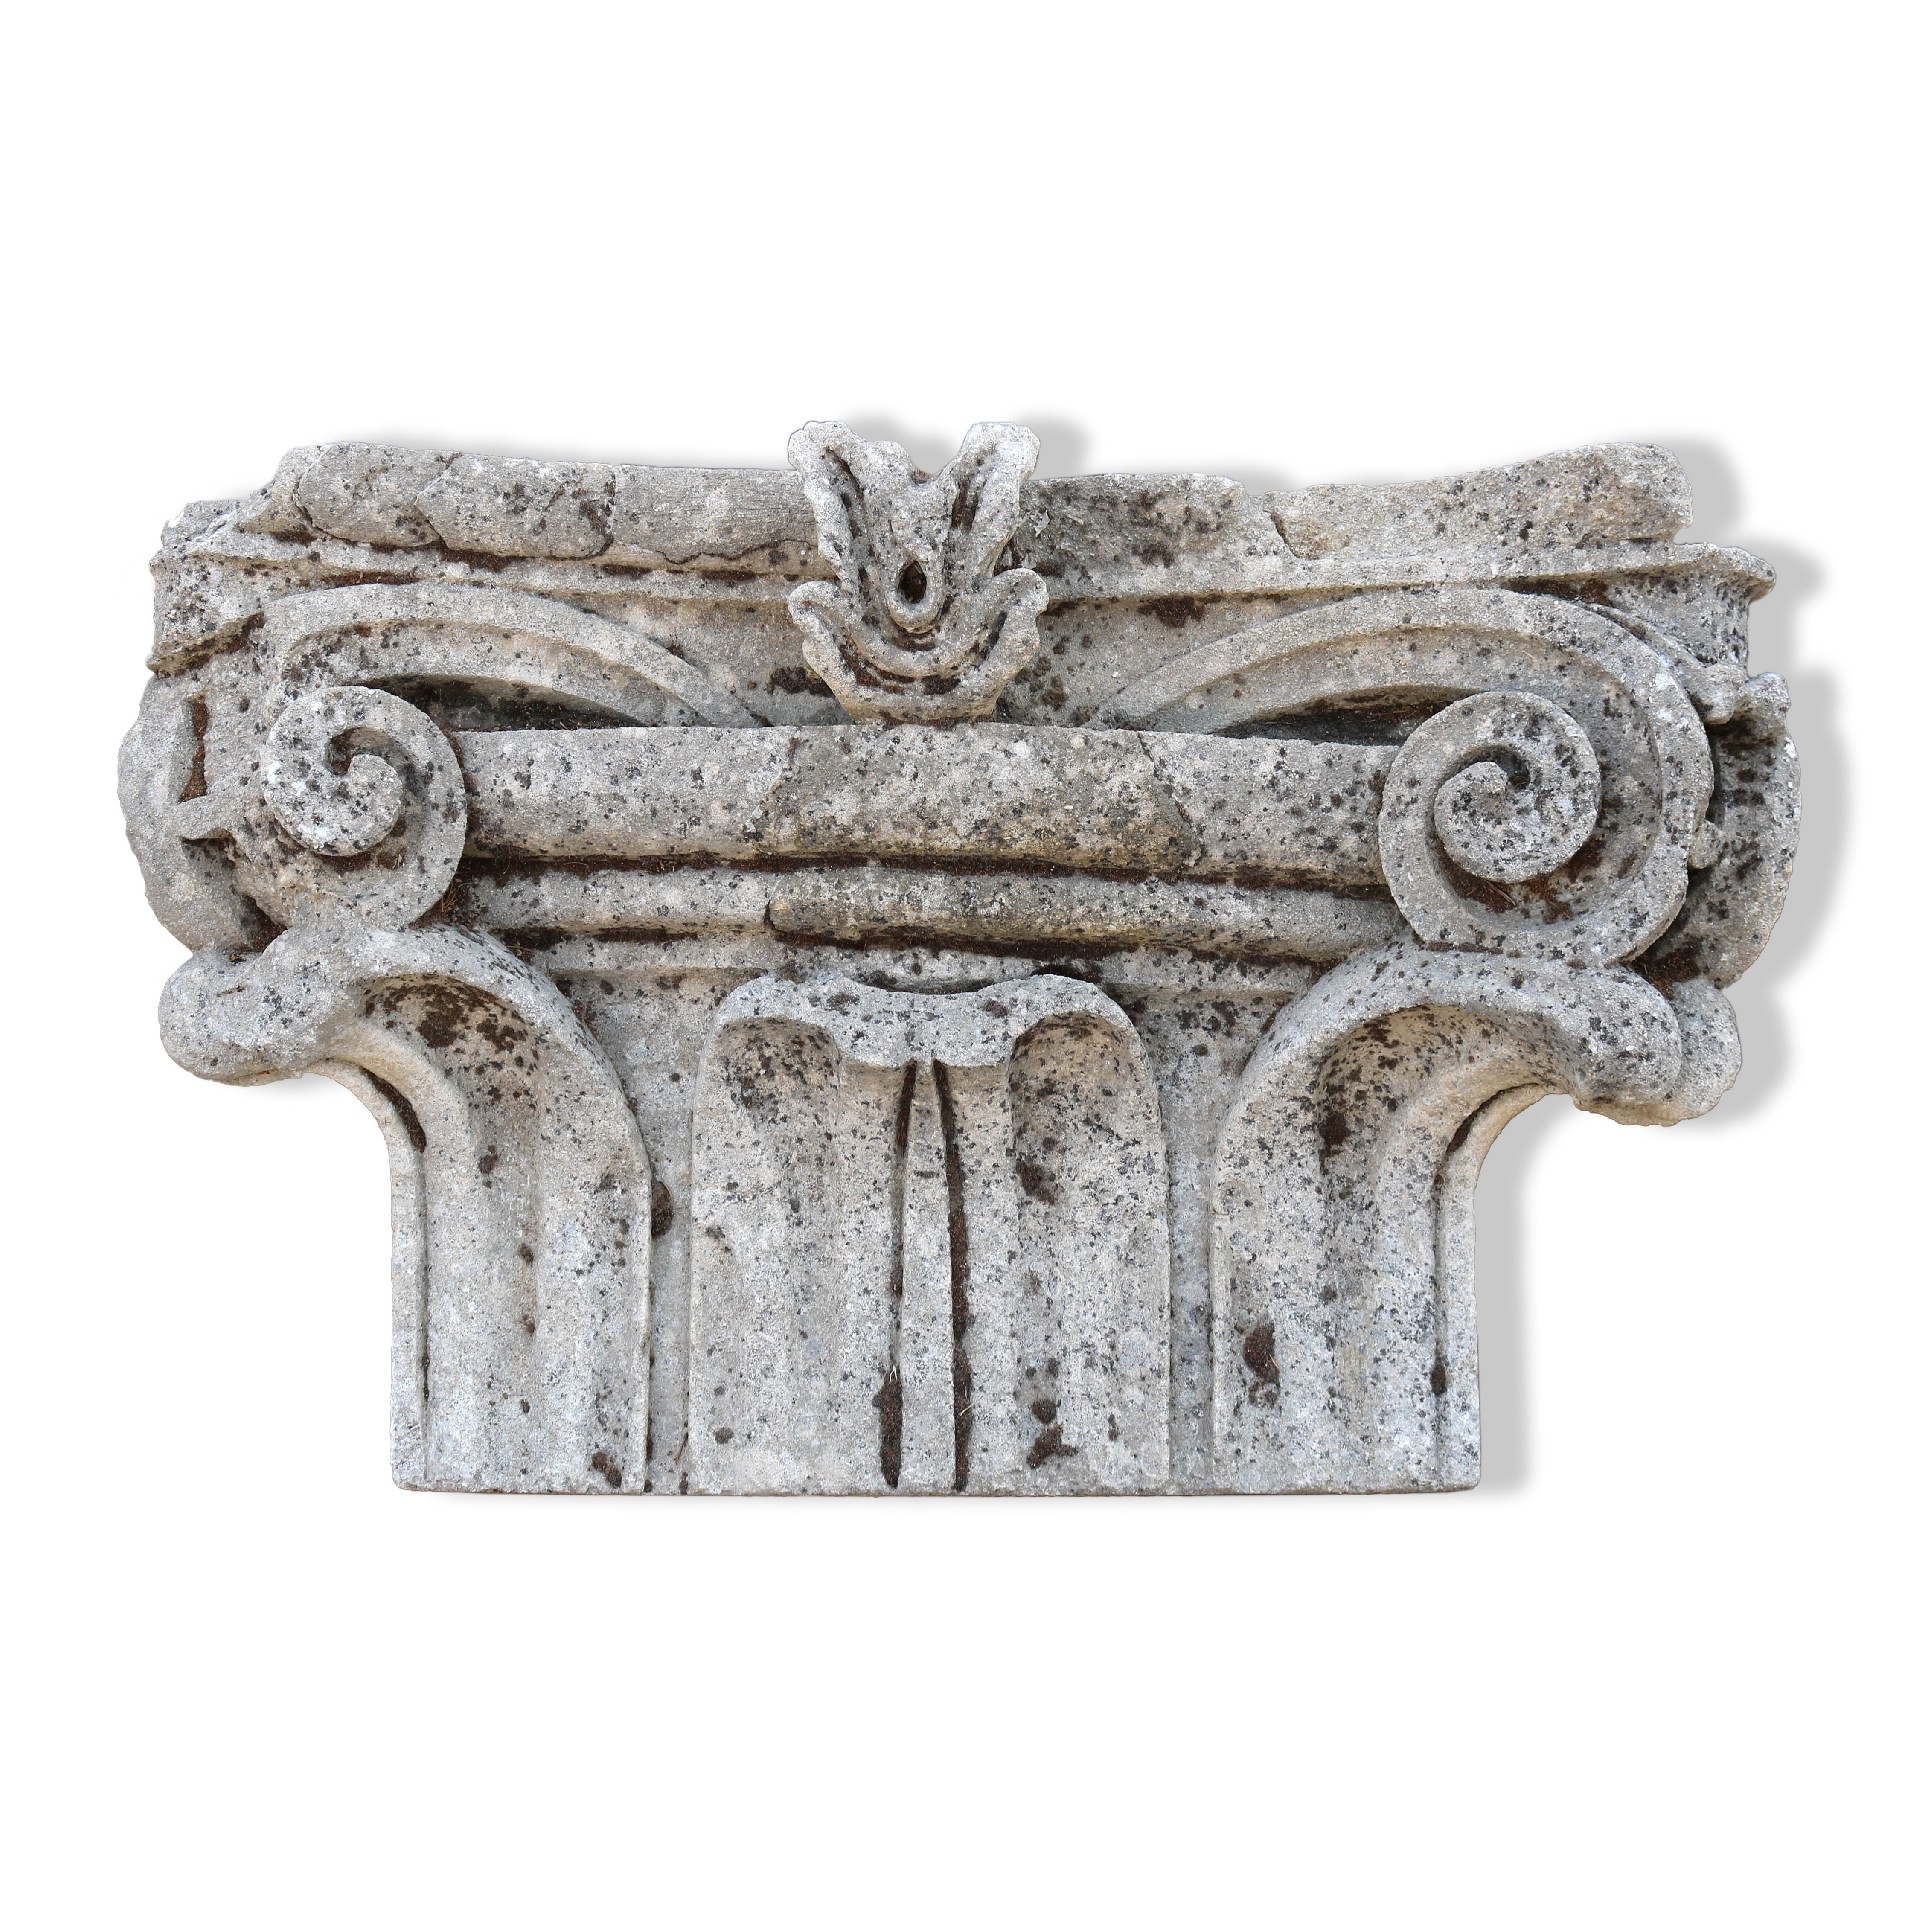 Antico capitello in pietra. Epoca 1800. - Capitelli basi per colonne - Architettura - Prodotti - Antichità Fiorillo